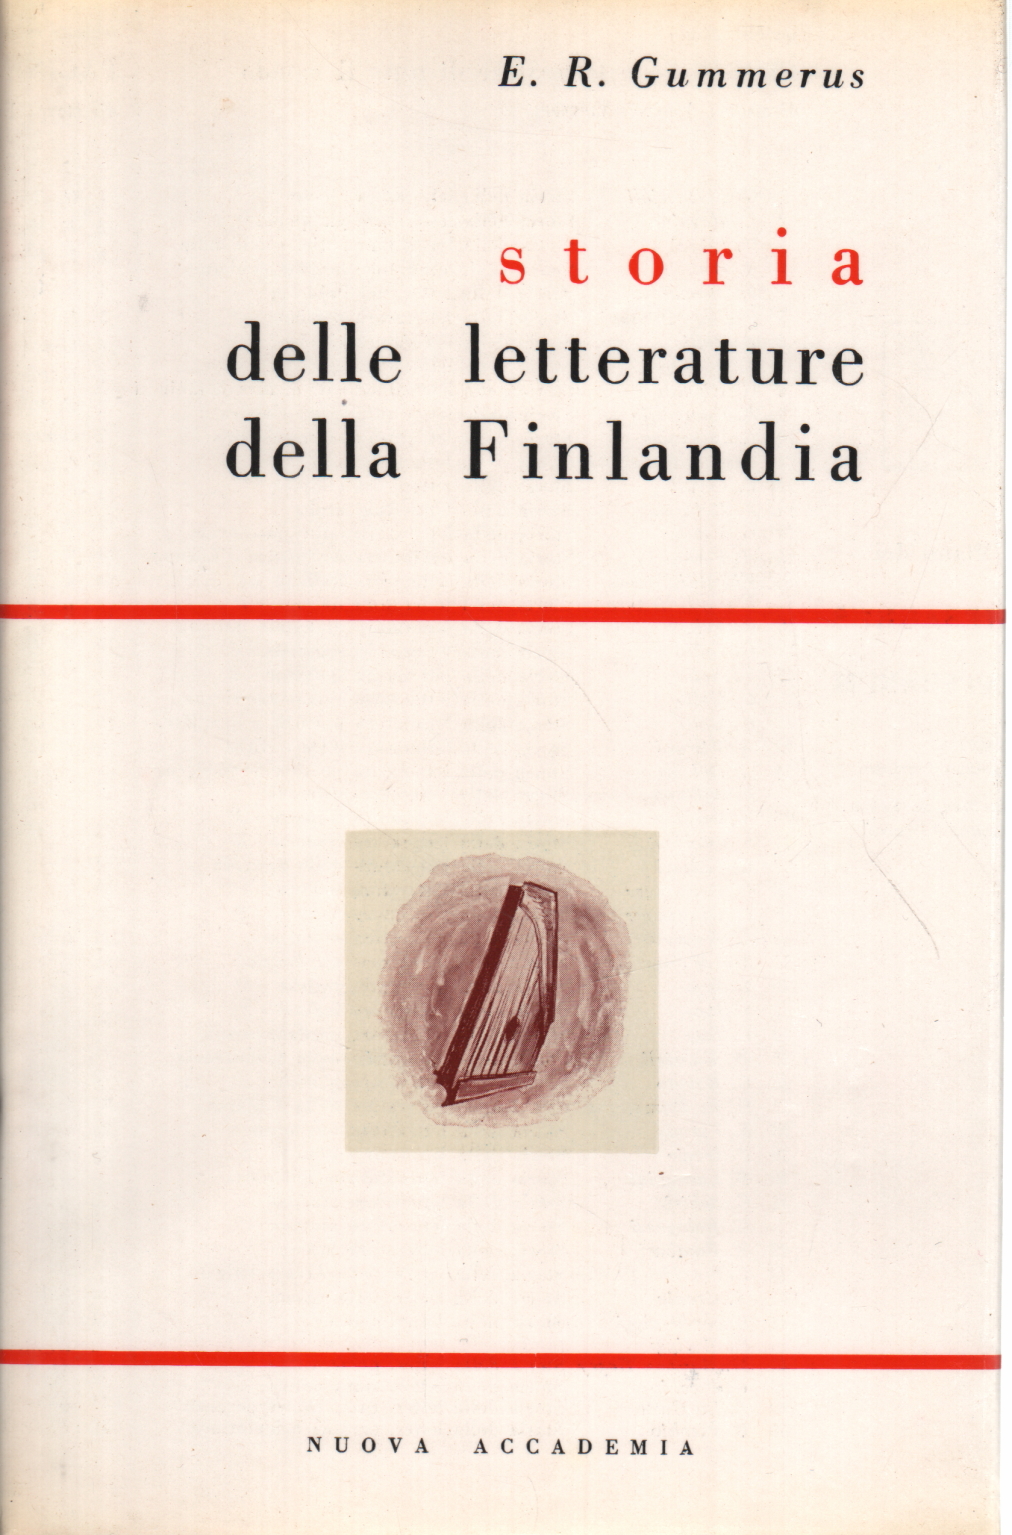 Geschichte der literaturen Finnlands, E. R. Gummerus